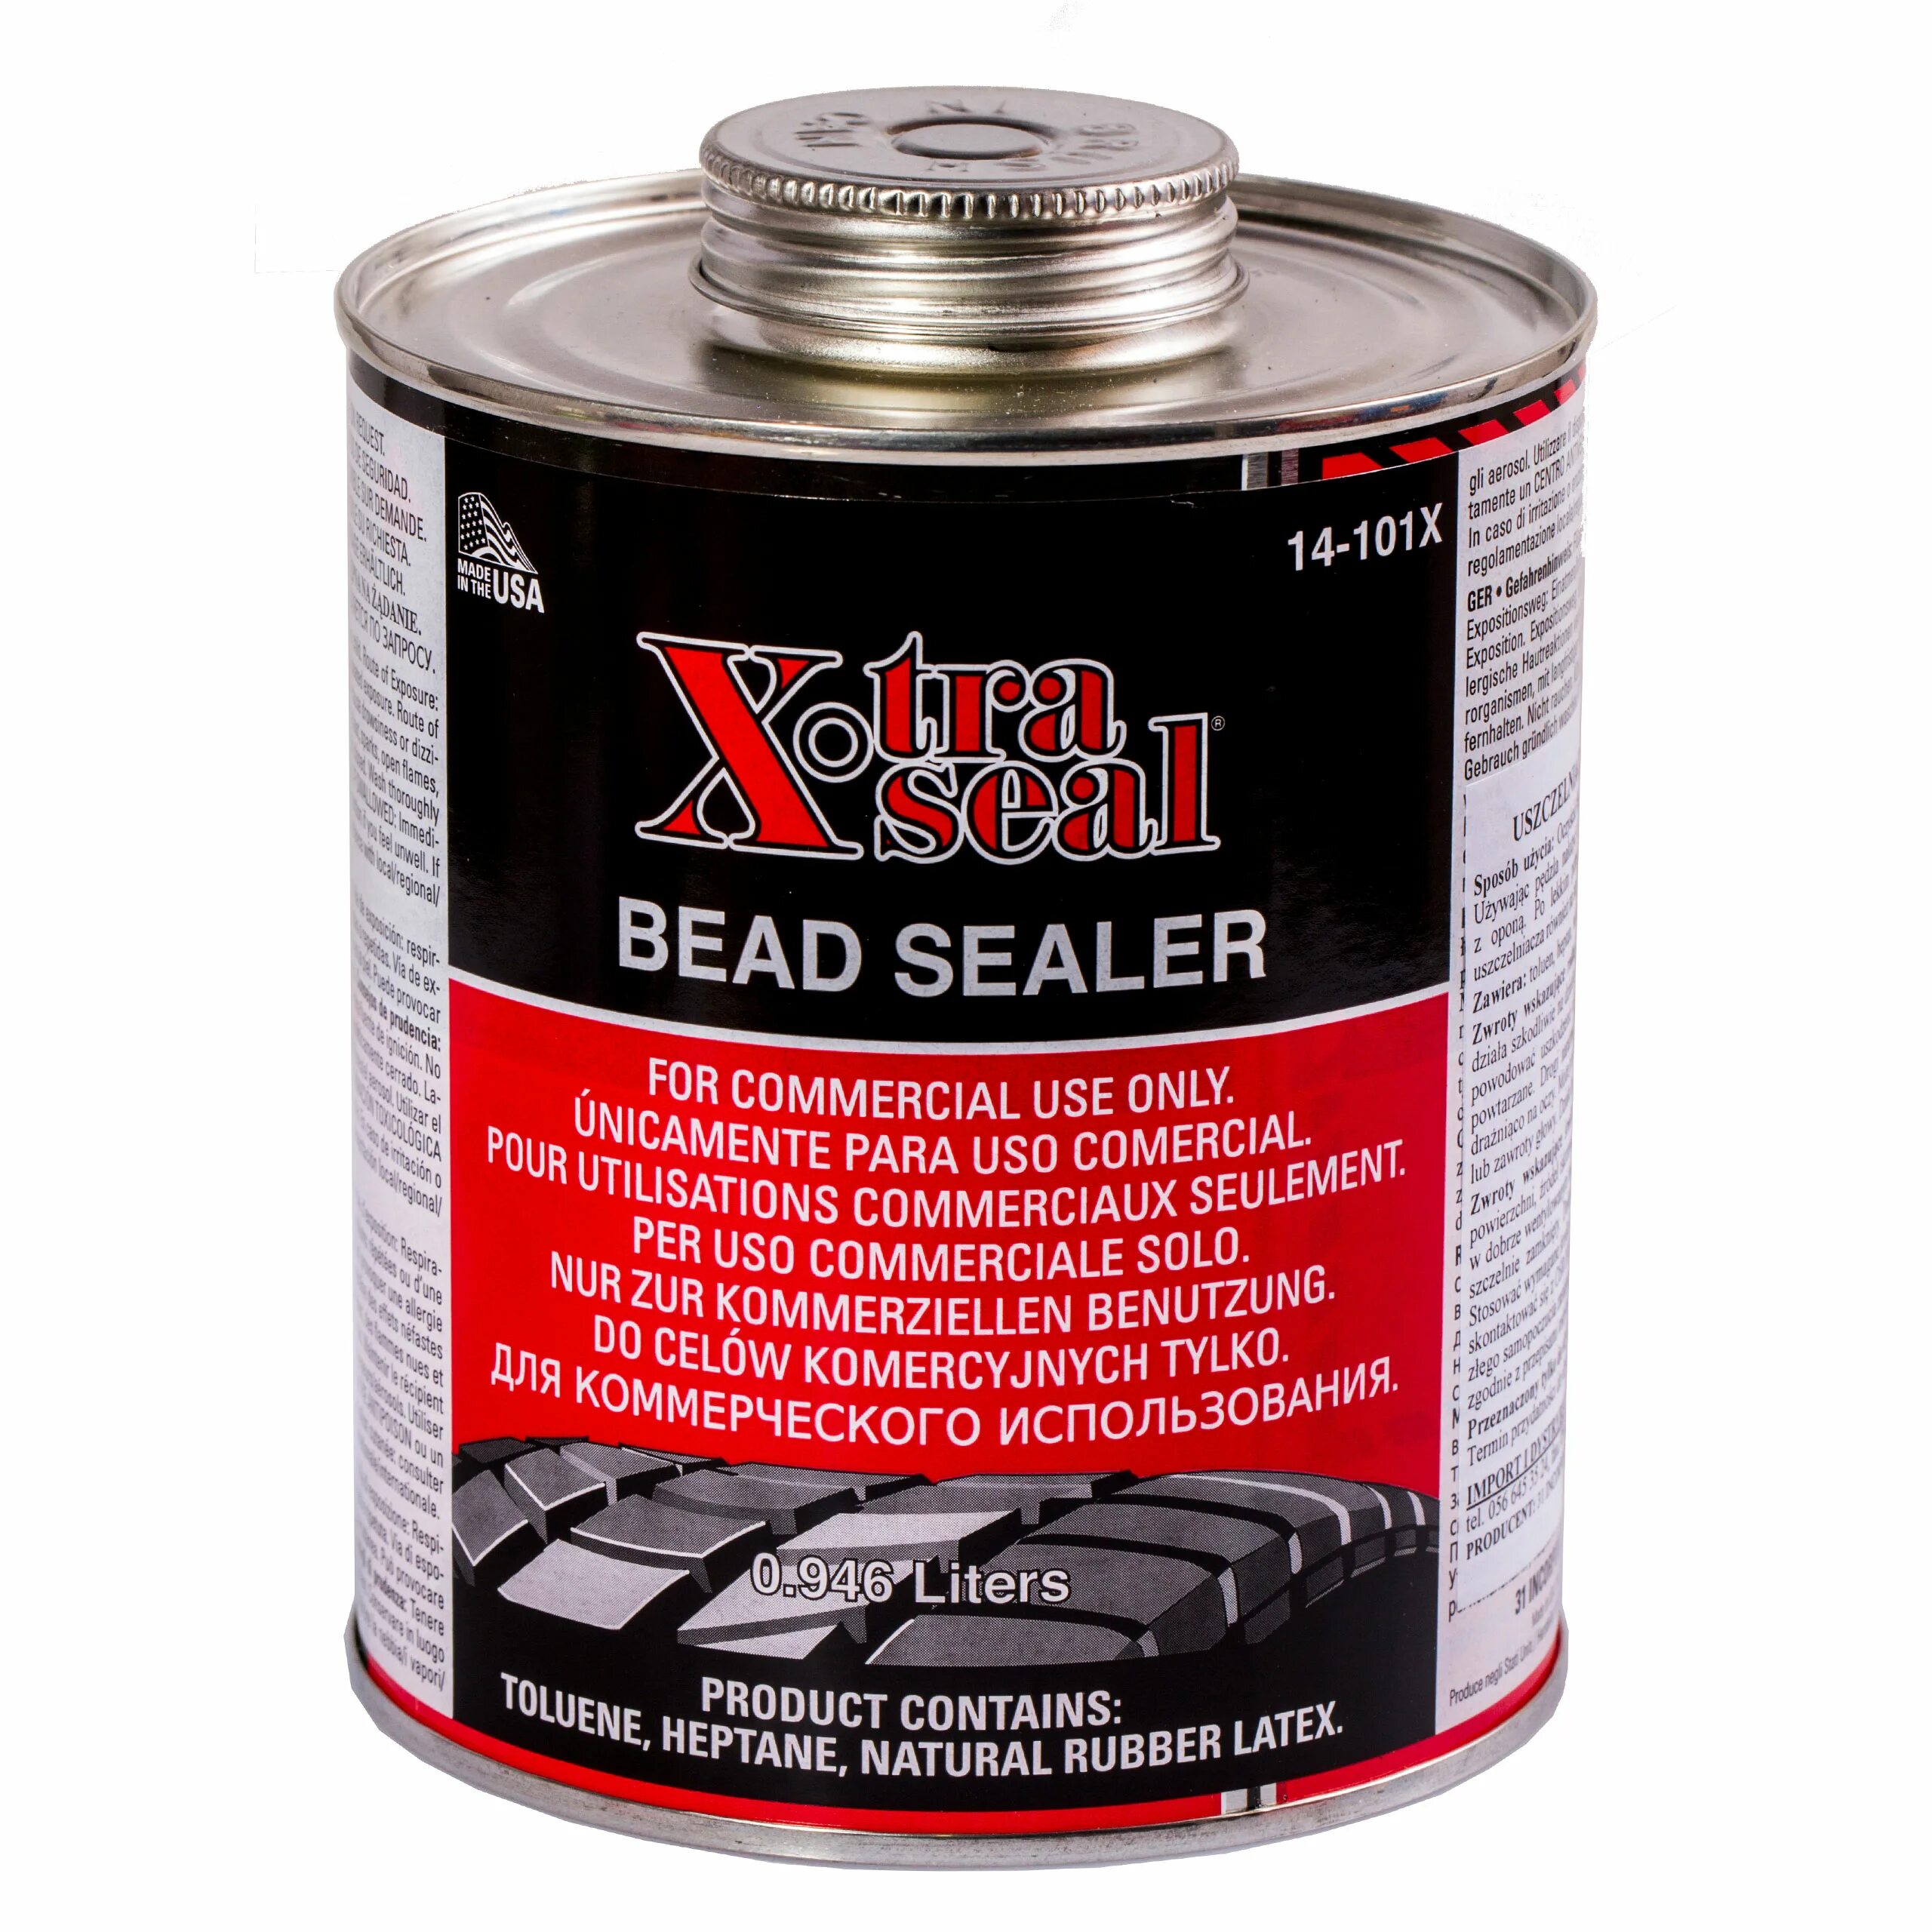 Герметик для шин купить. Герметик борта покрышки Bead Sealer, 946 мл Tech. Xtra Seal Bead Sealer 14-101x. Герметик бортовой для шиномонтажа Xtra Seal. Xtra Seal клей.